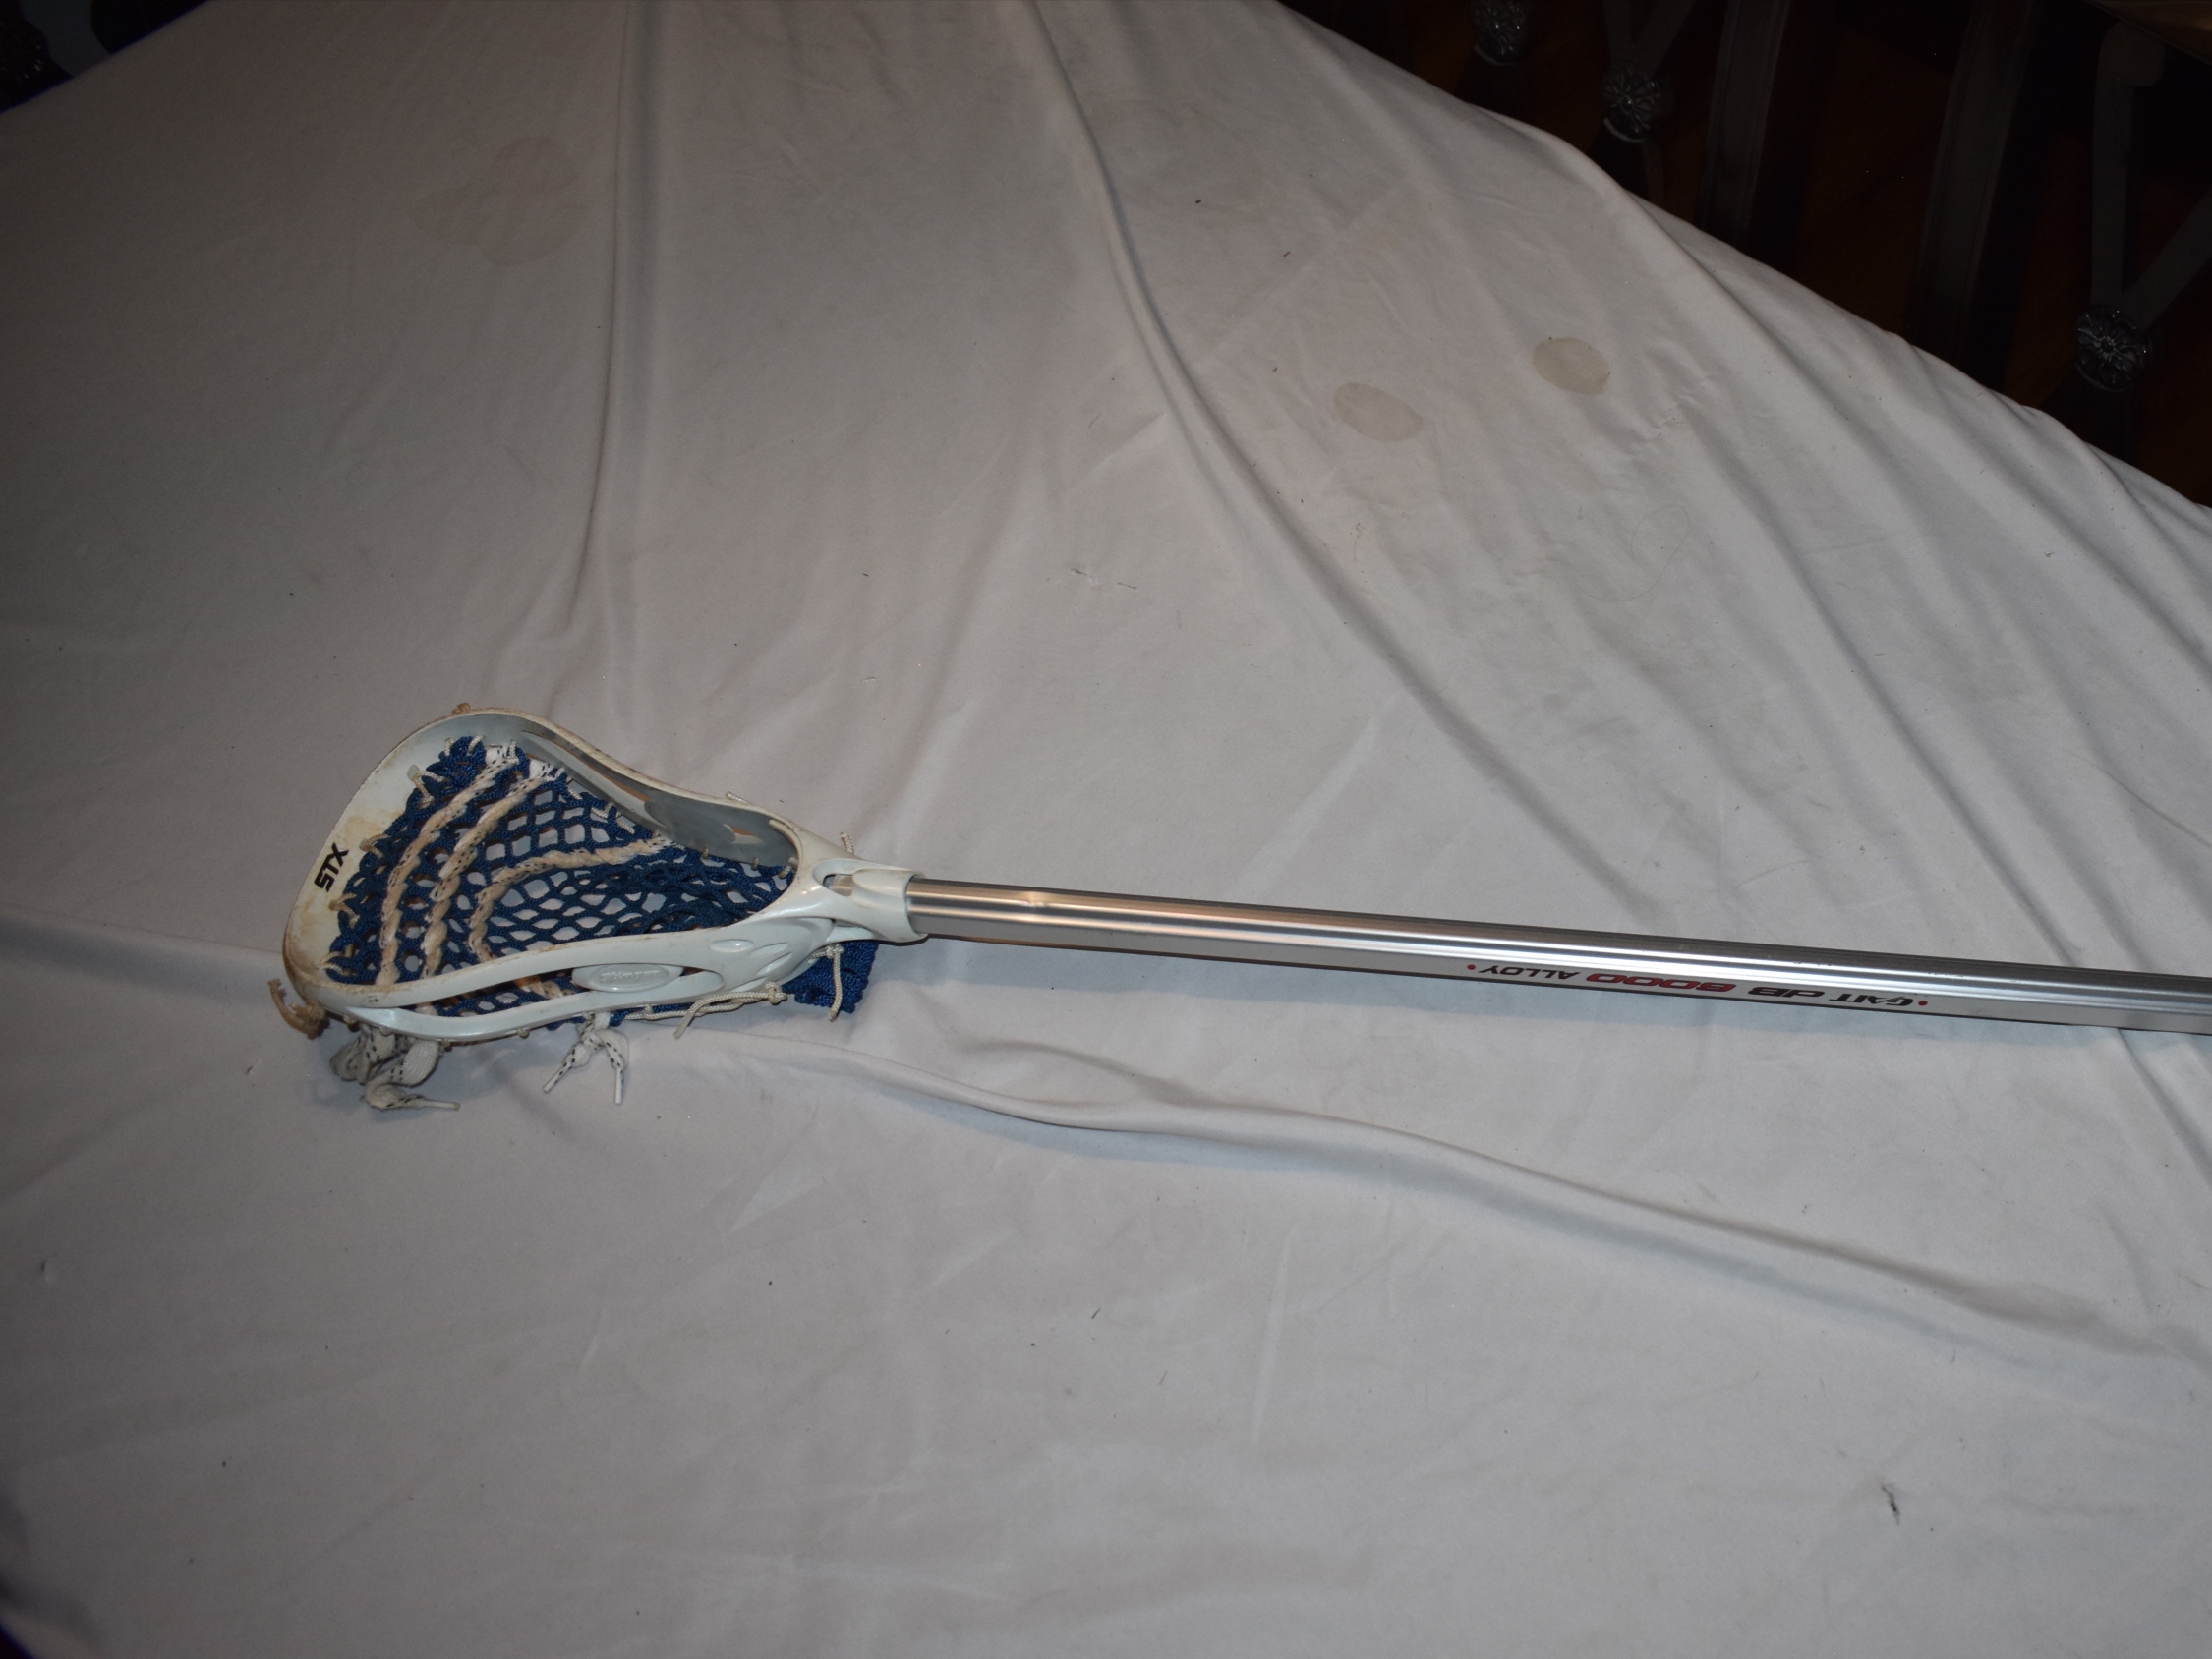 Gait db 6000 Alloy Lacrosse Stick w/ Strung Stinger Head